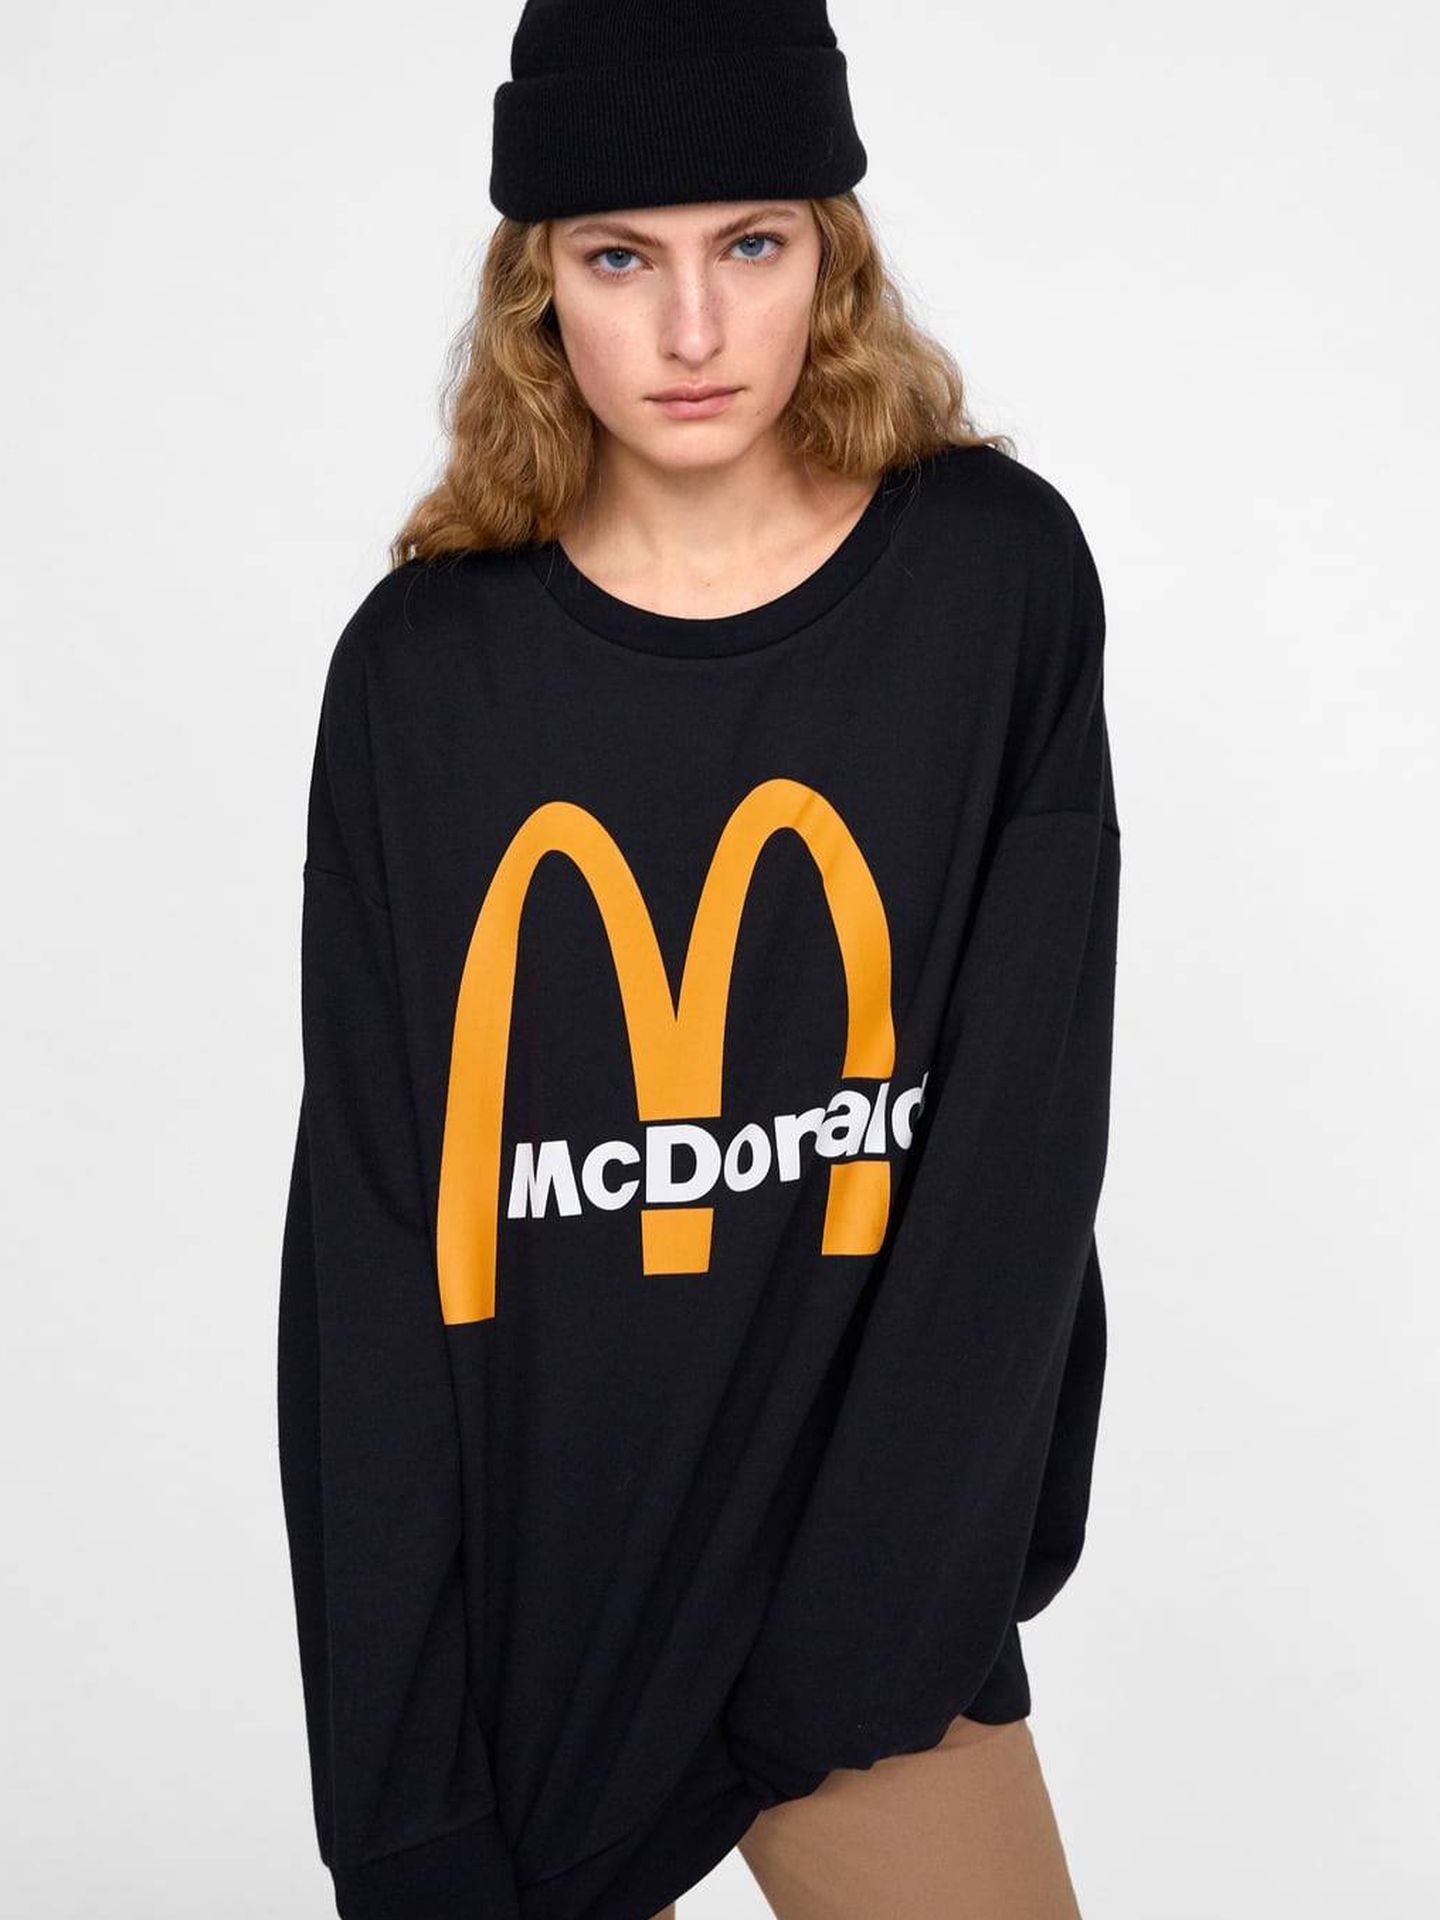 Negra, unisex, oversize y con el logo de McDonald’s, 22,95€. (Cortesía)